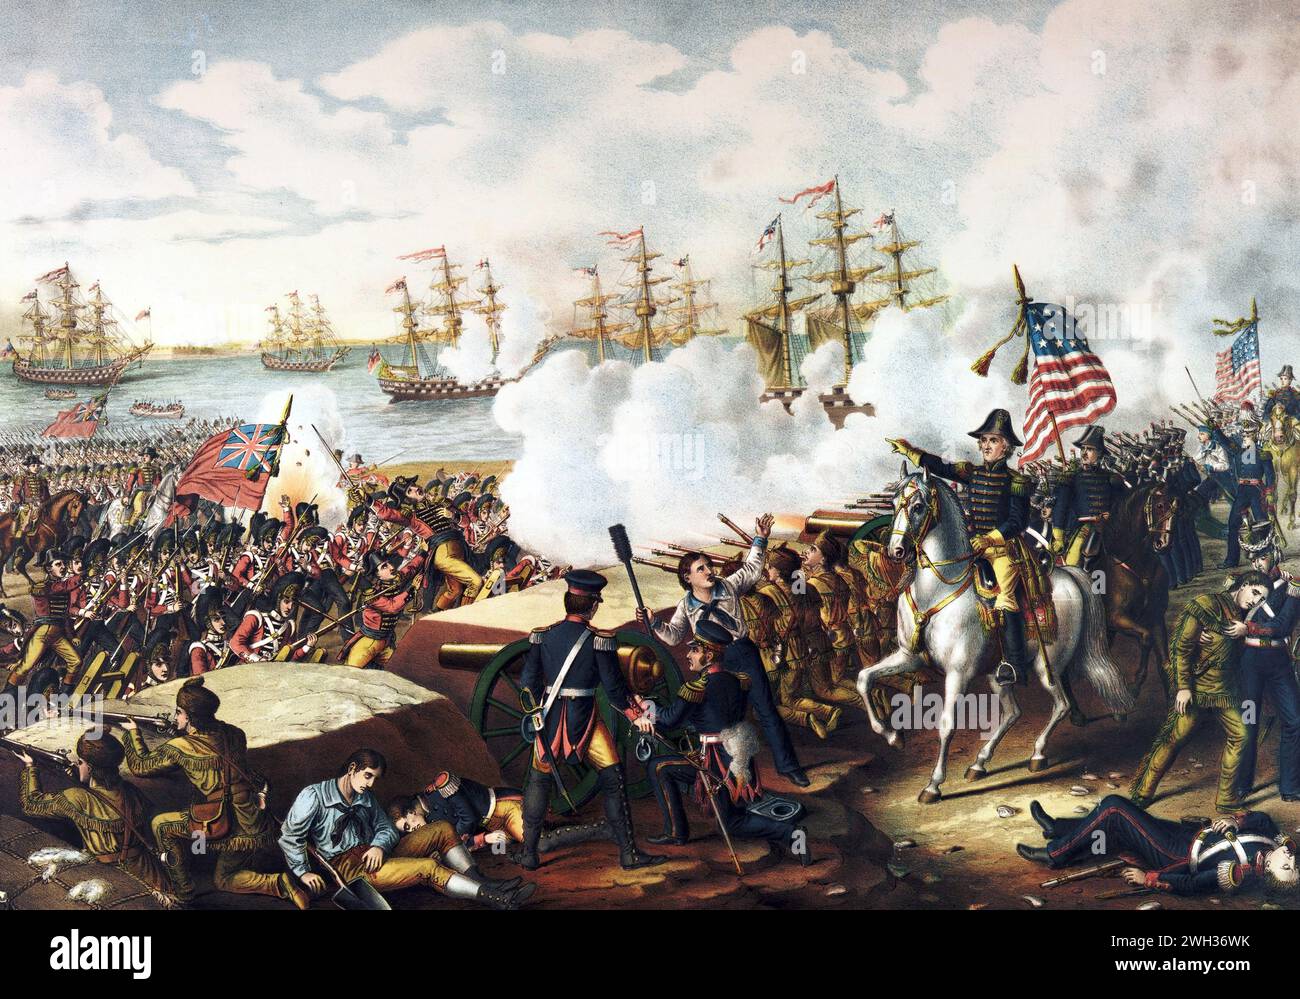 Krieg von 1812. Die Schlacht von New Orleans. Das Bild zeigt General Andrew Jackson auf einem weißen Pferd, der am 8. Januar 1815, der letzten großen Schlacht des Krieges von 1812, seine Truppen bei der Verteidigung von New Orleans anführt. Stockfoto